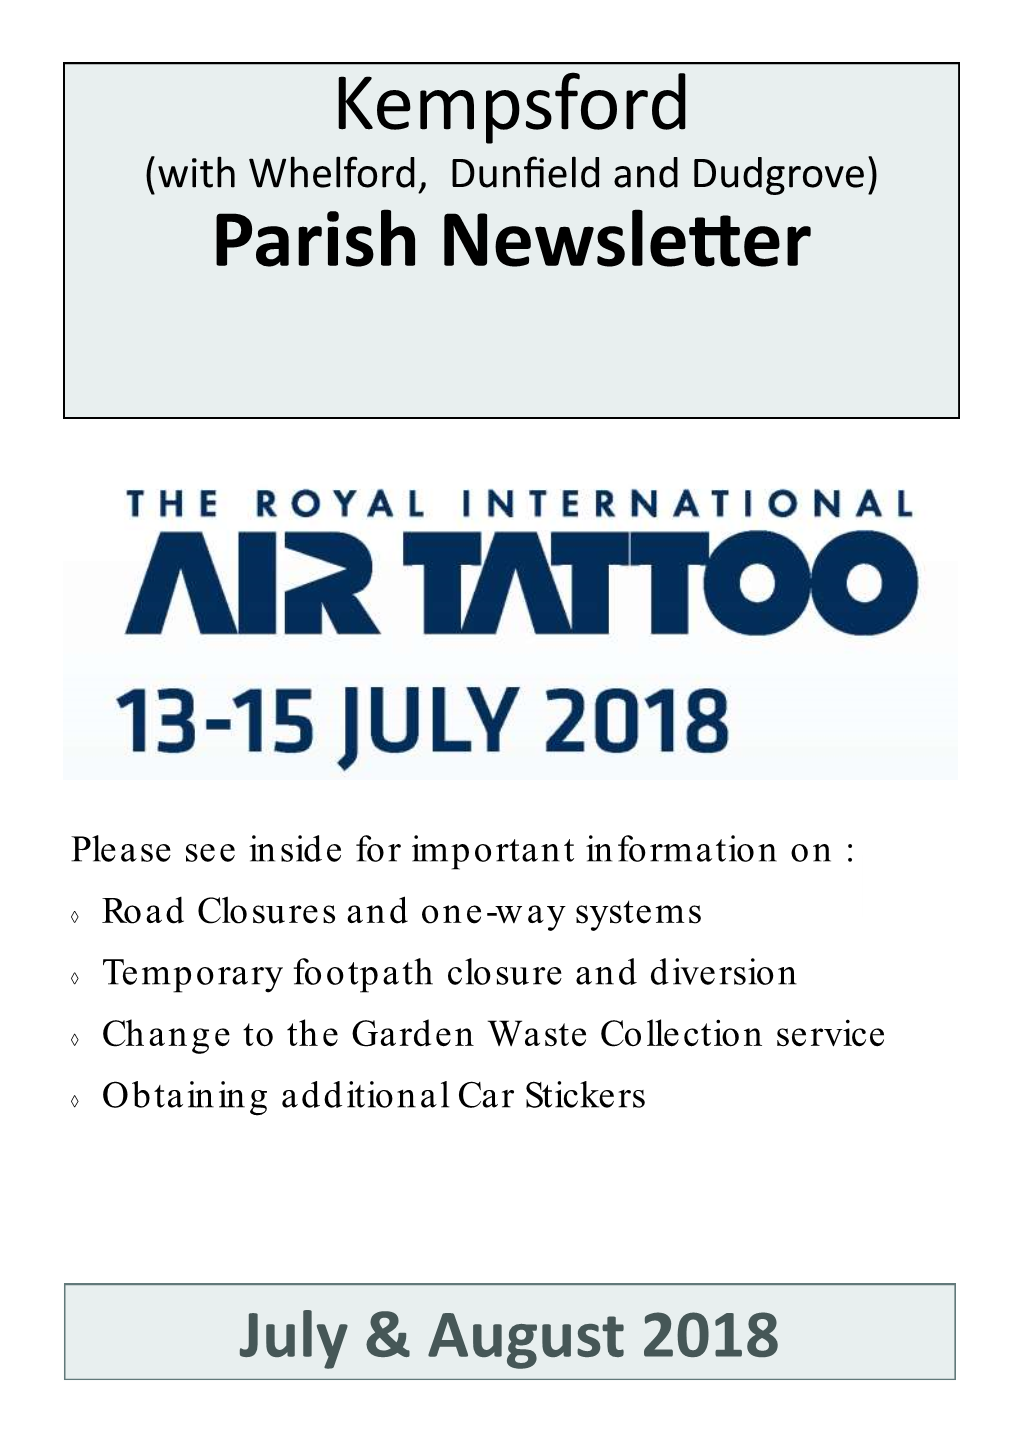 Kempsford Parish Newsletter